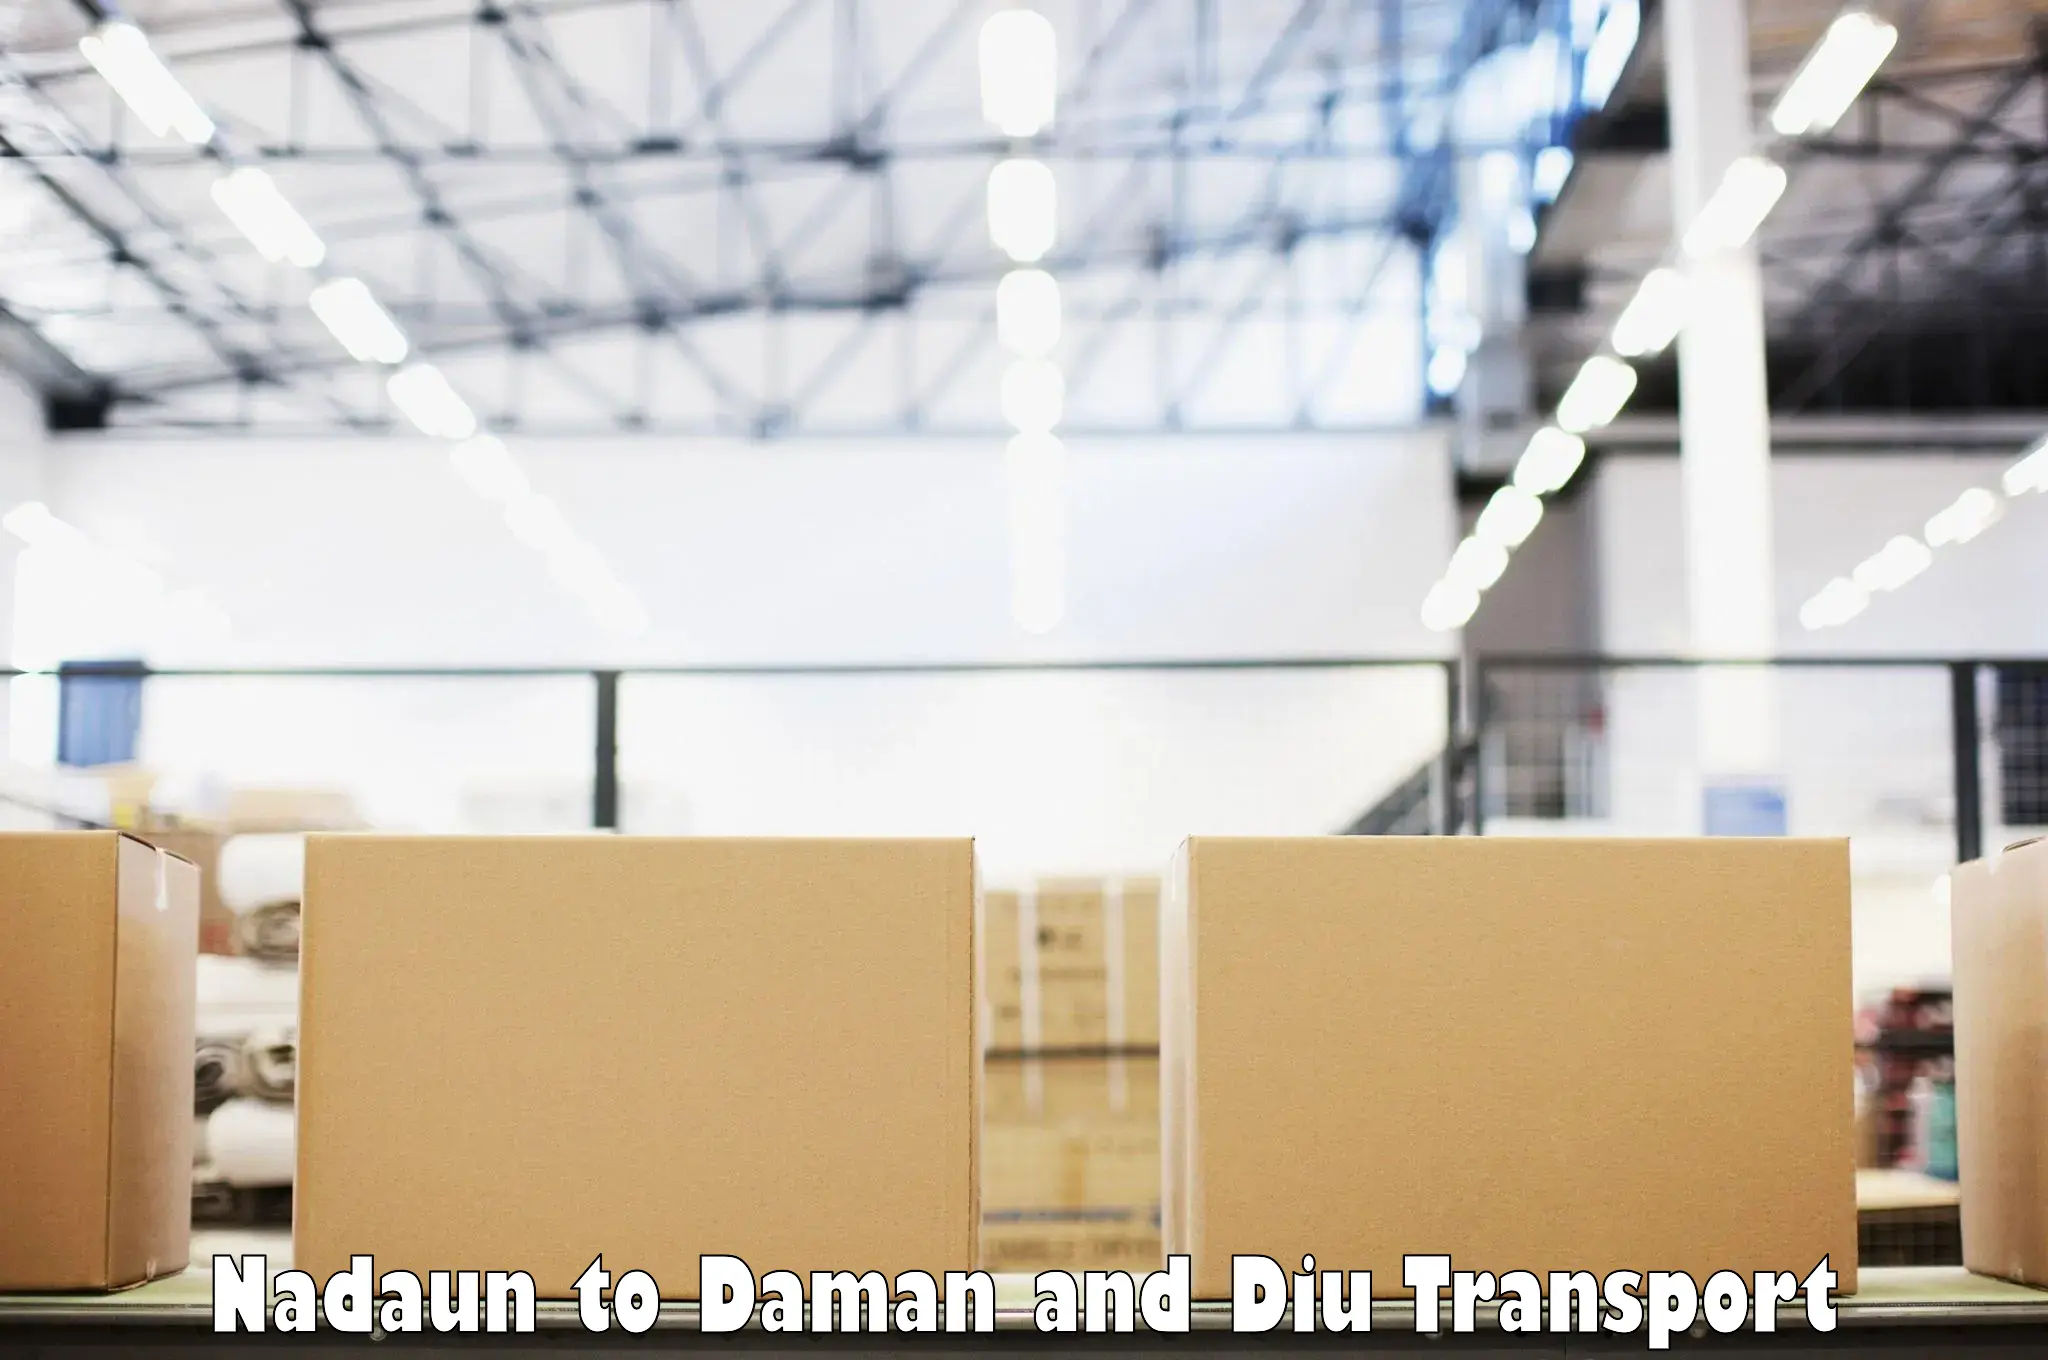 Container transport service Nadaun to Daman and Diu